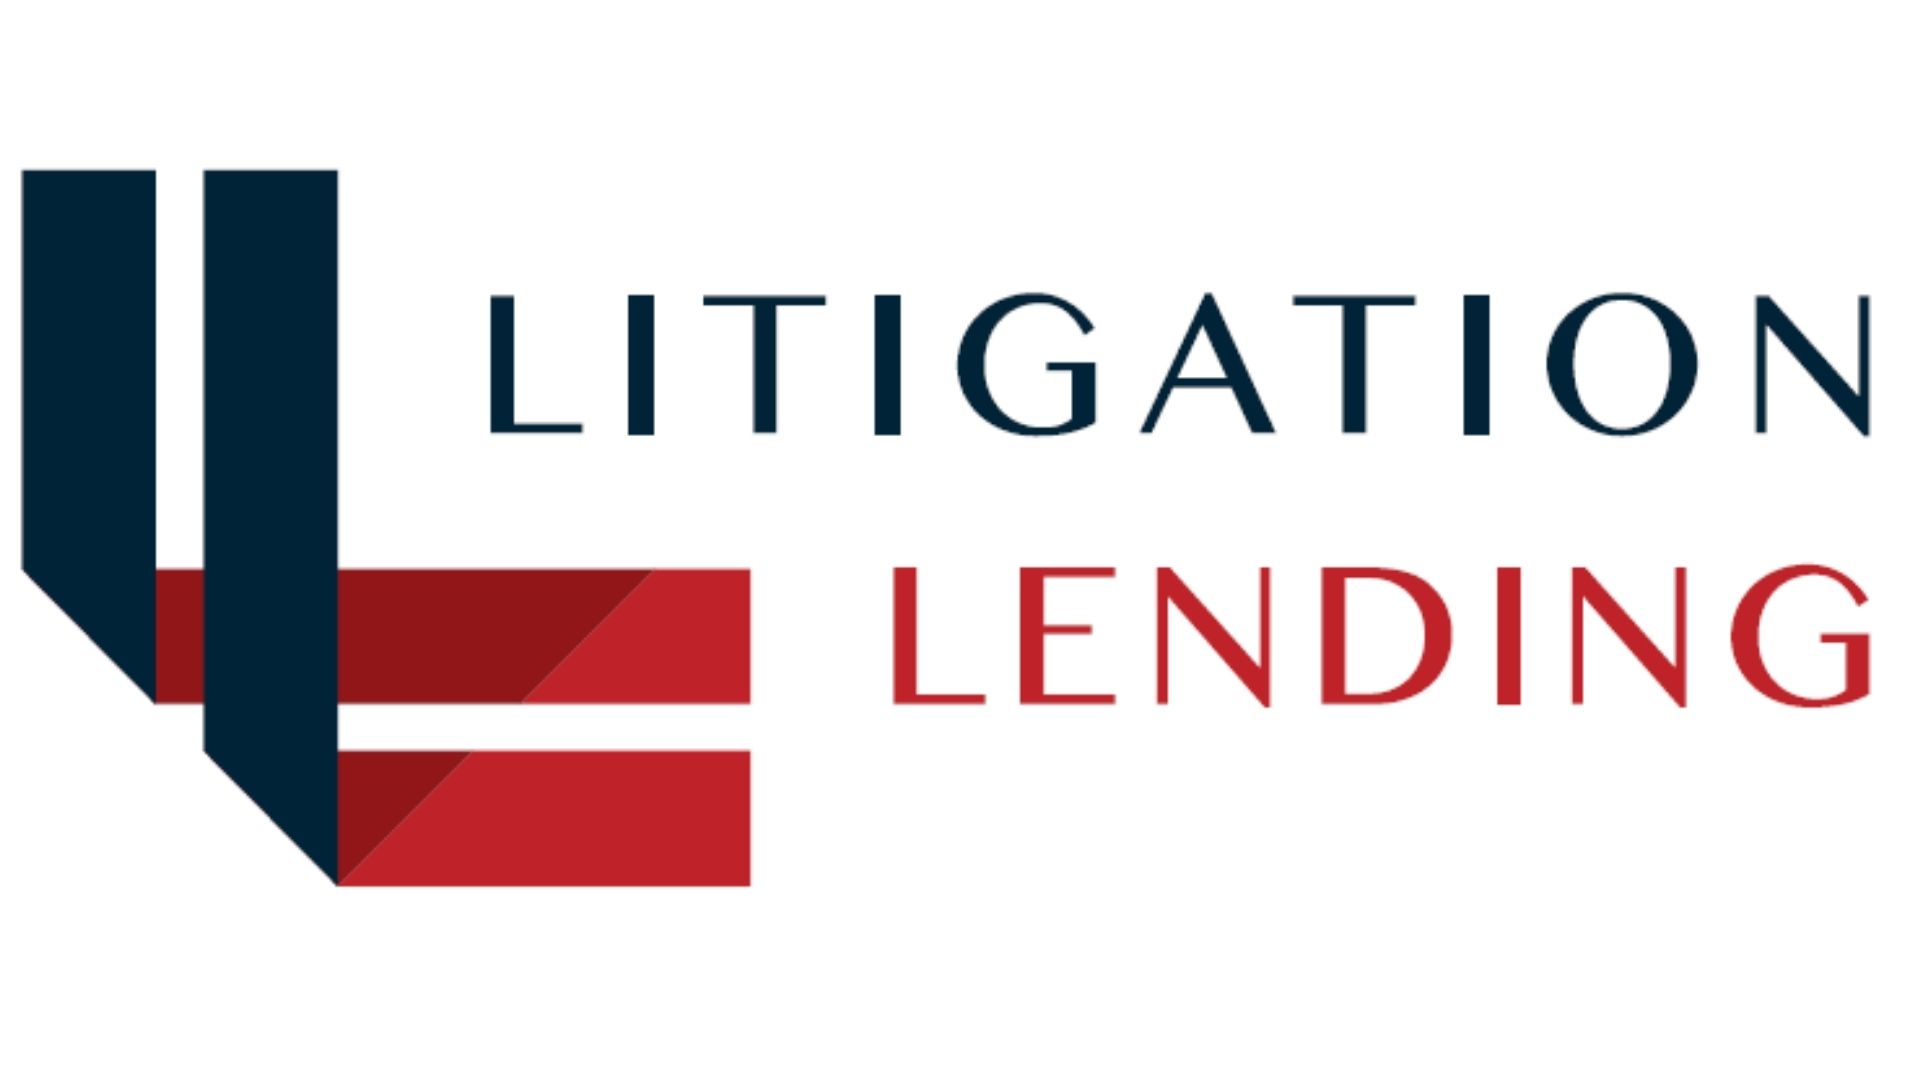 Litigation Lending Services